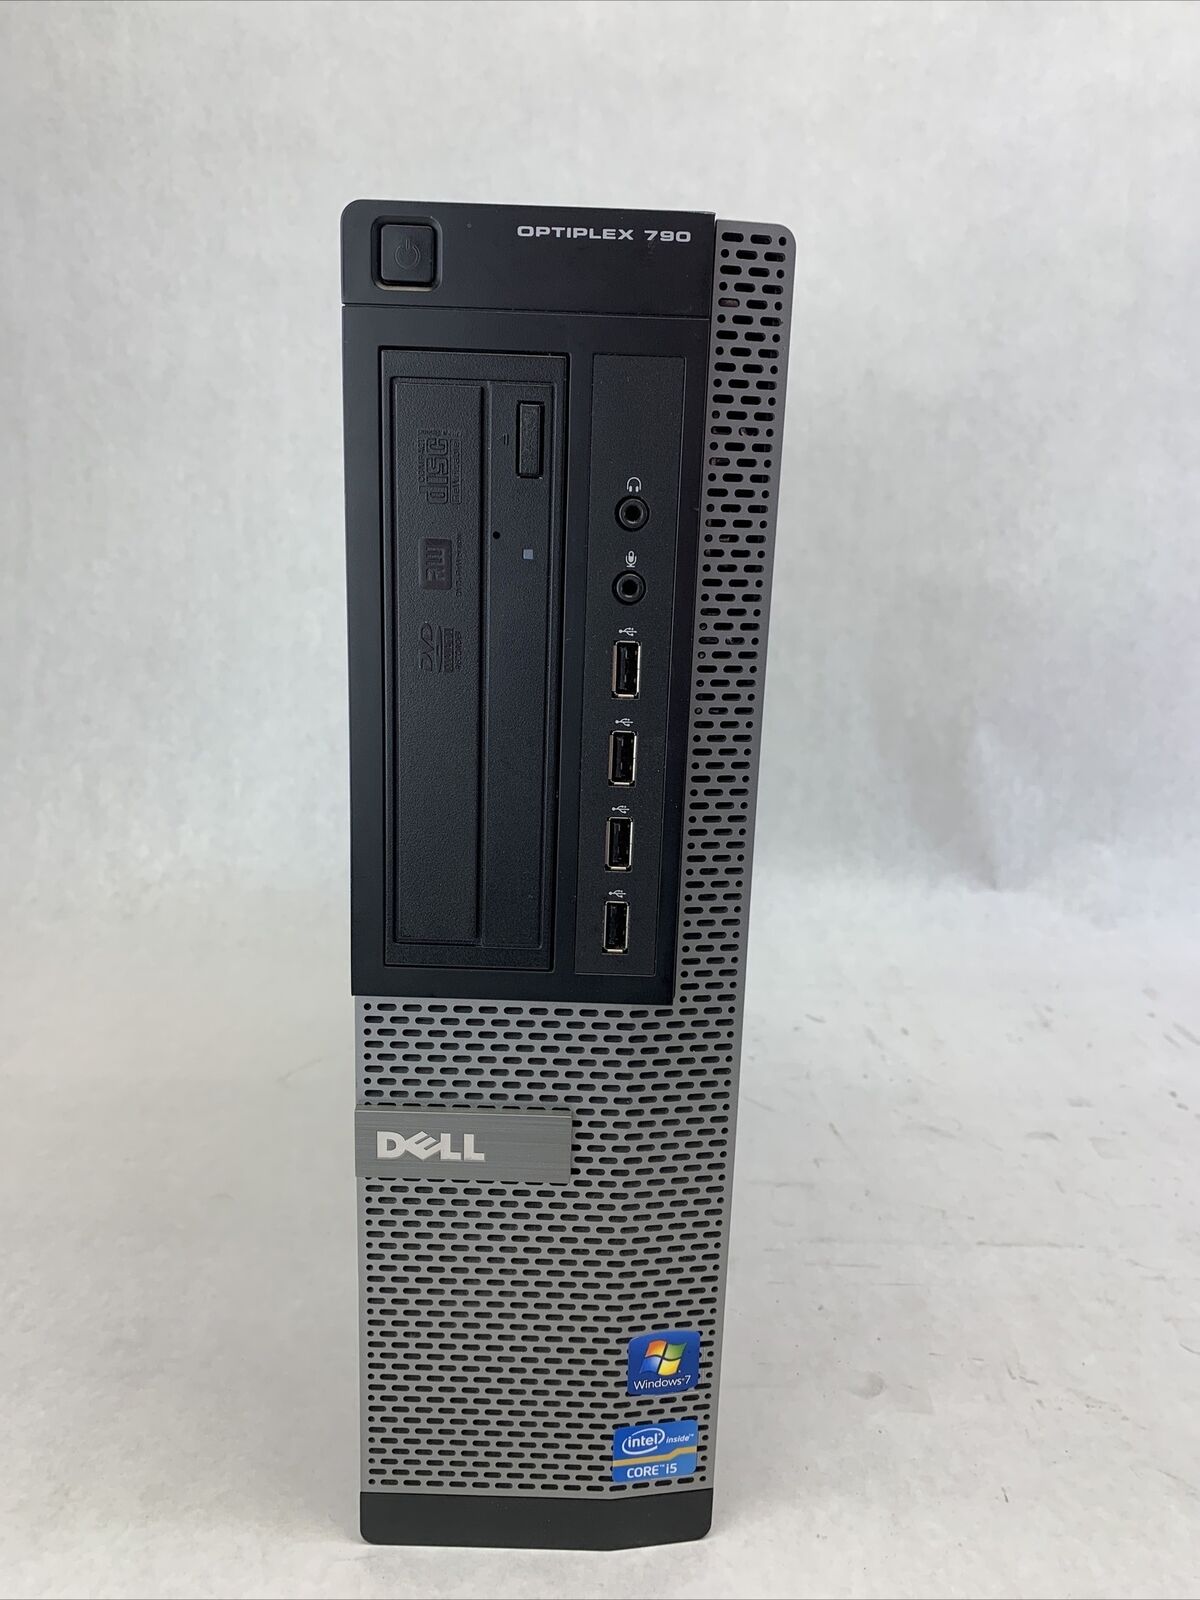 Dell Optiplex 790 DT Intel Core i5-2400 3.1GHz 4GB RAM No HDD No OS